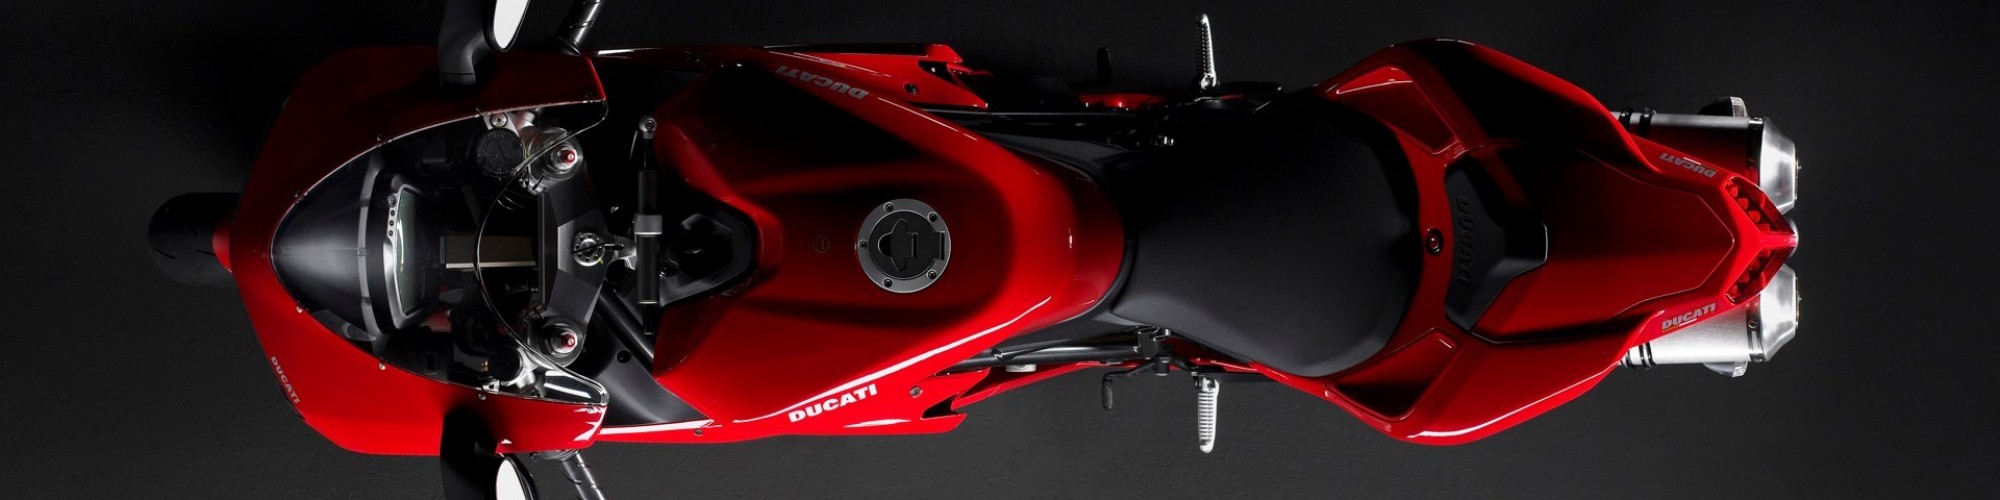 Ducati cover image